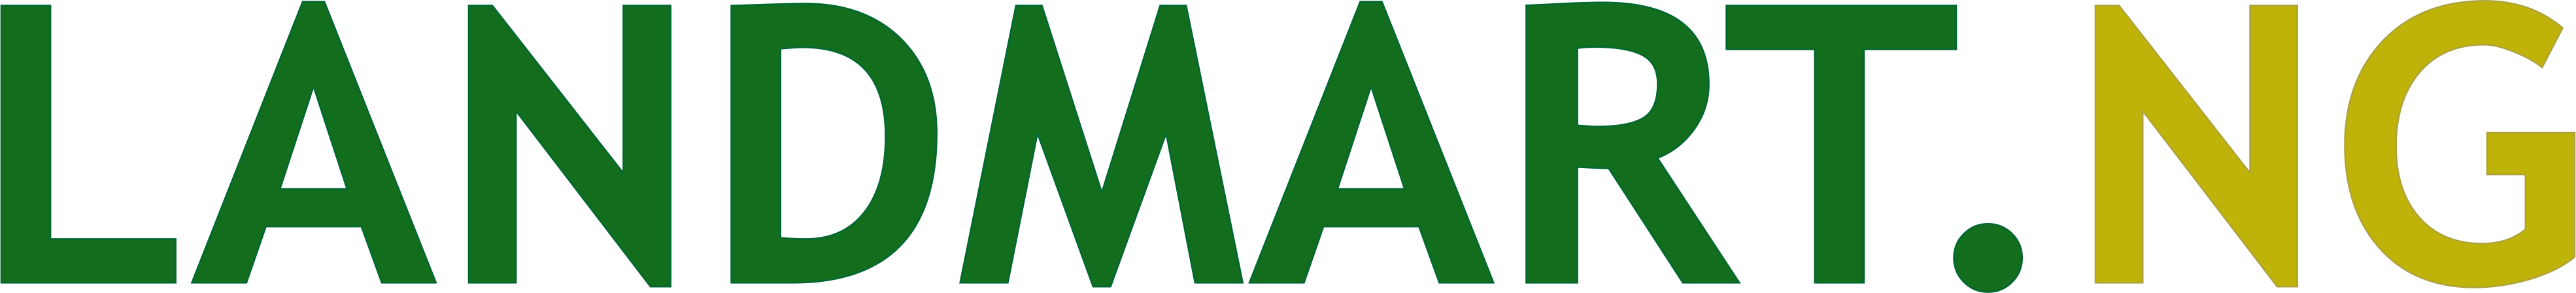 Landmart Logo